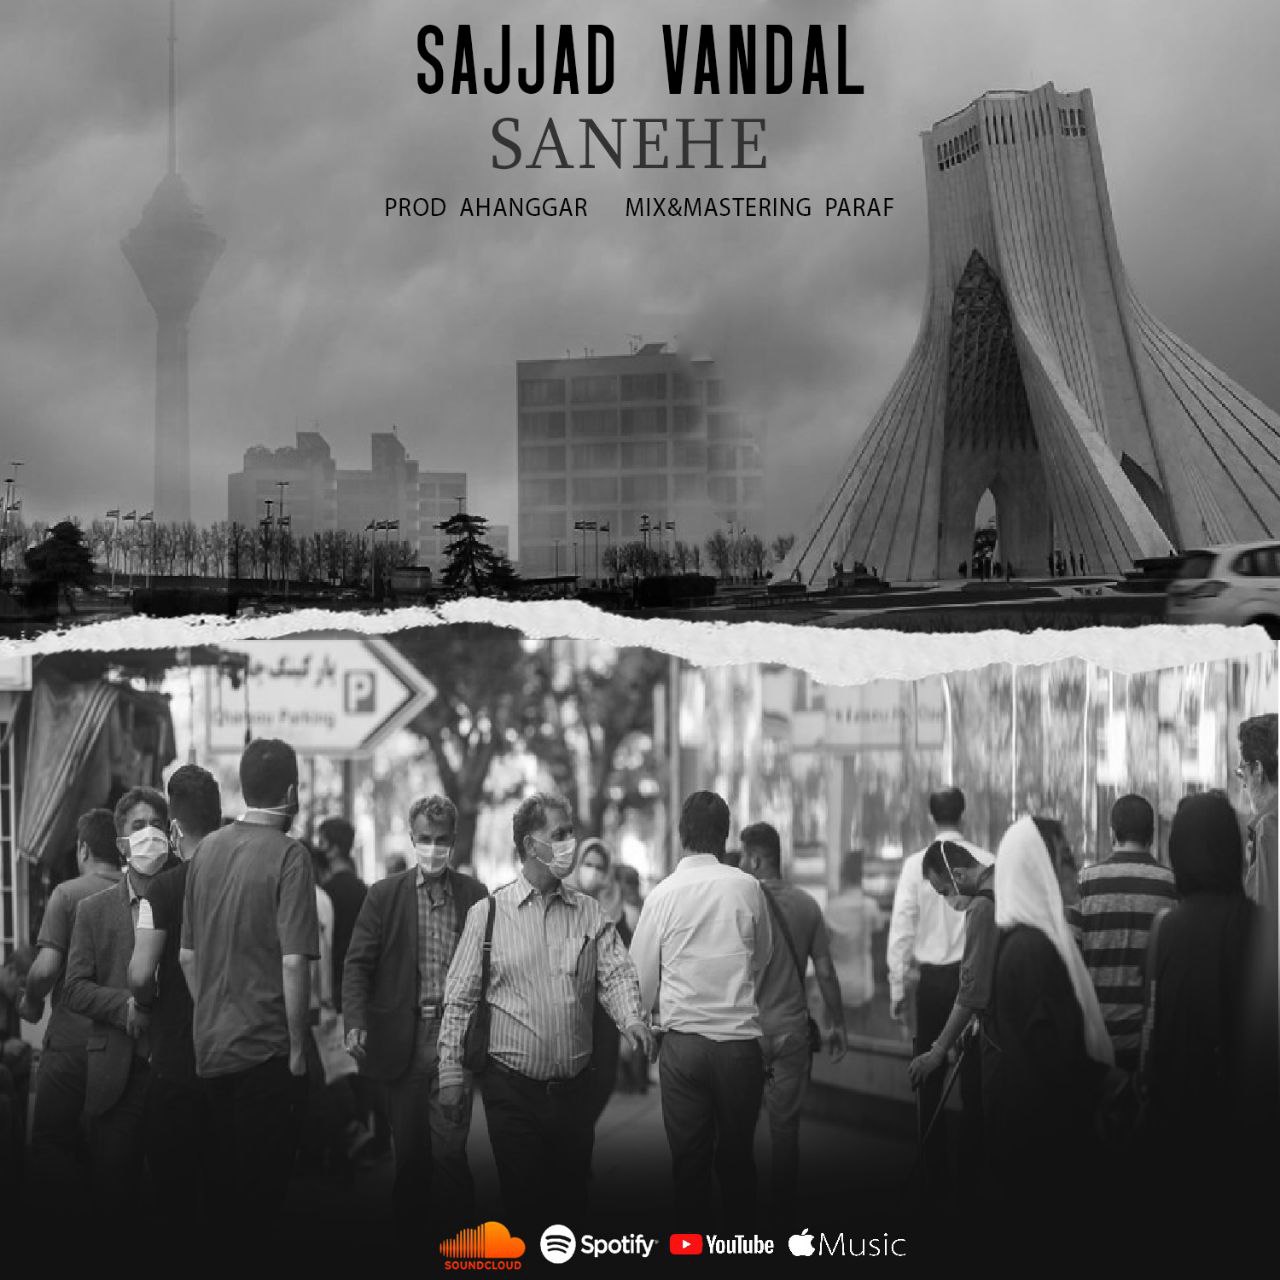  دانلود آهنگ جدید سجاد وندال - صانحه | Download New Music By Sajad Vandal - Sanehe